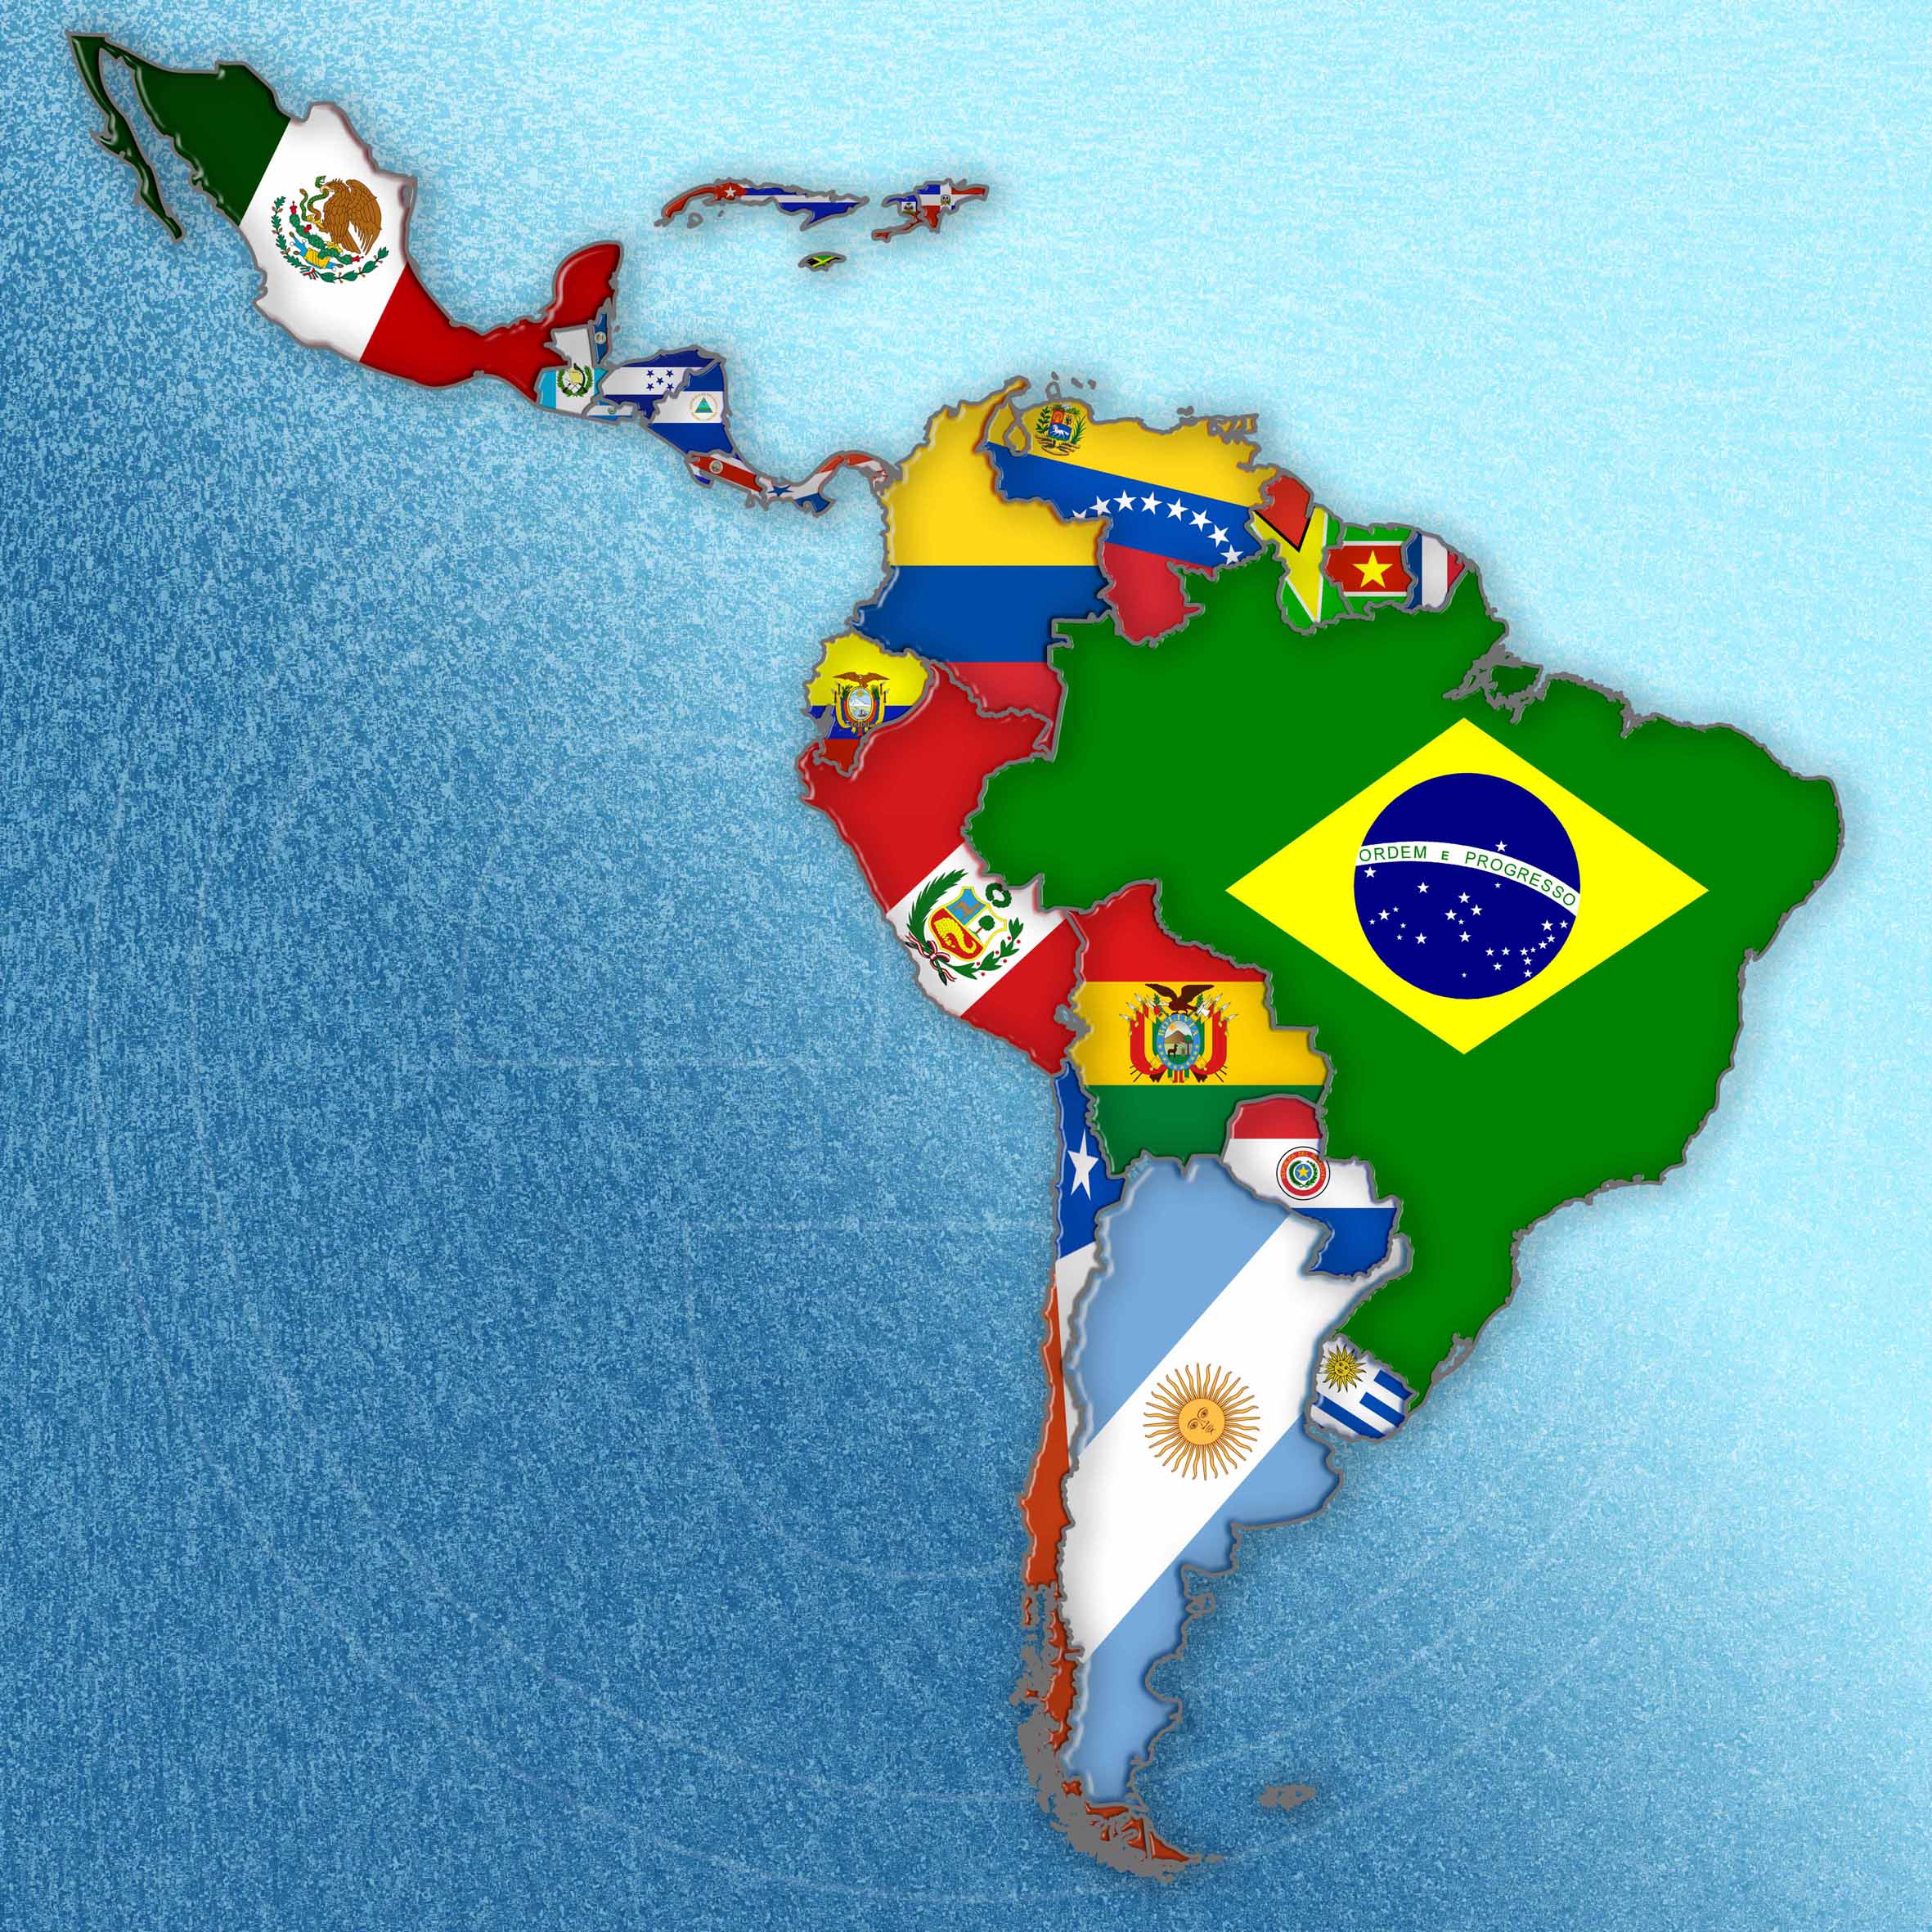 Melanoma lentiginoso acral: ¿qué datos existen en Latinoamérica?